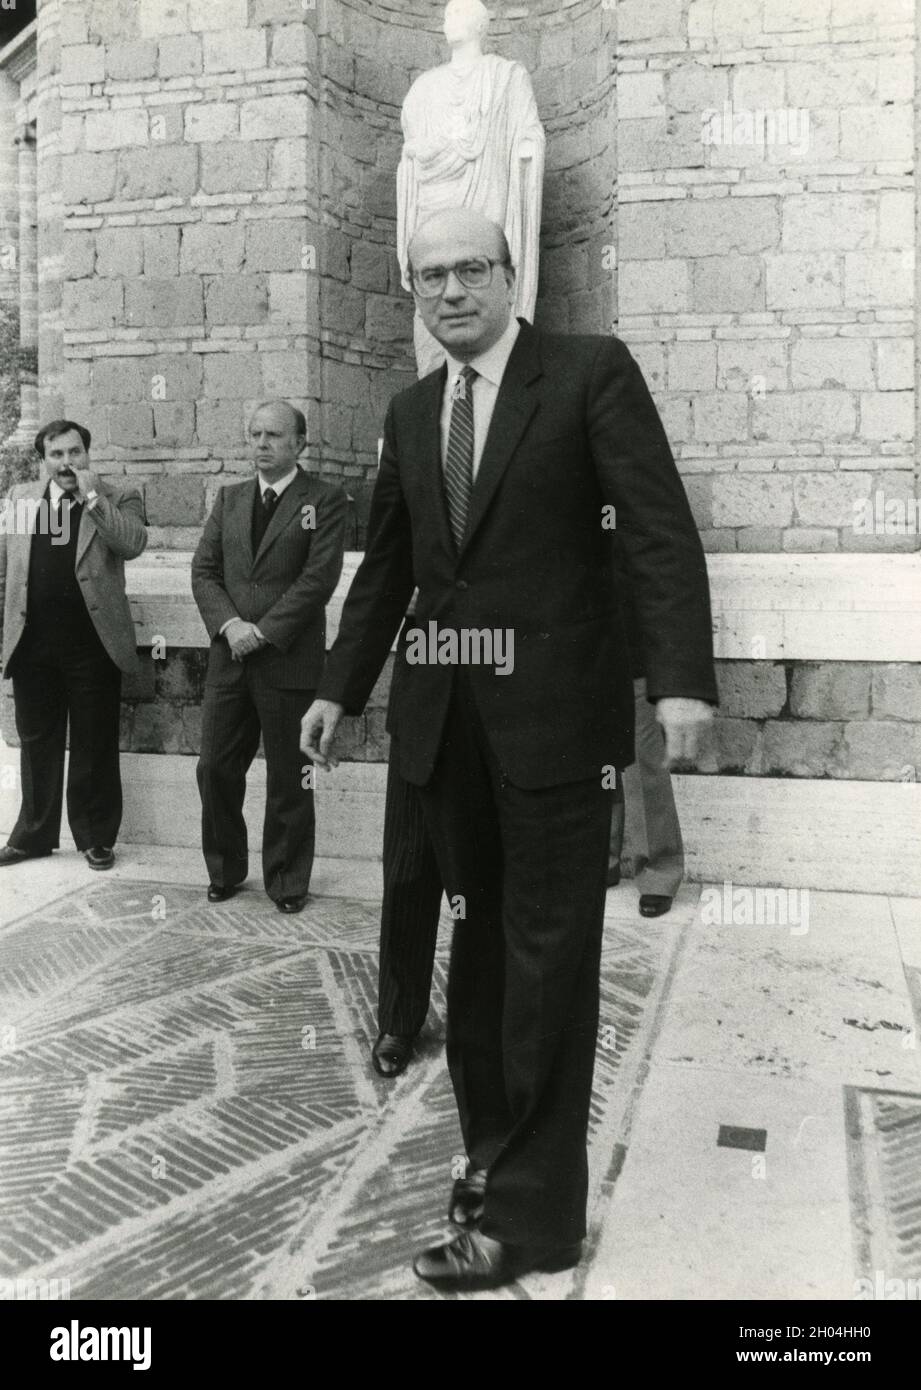 Italian politician and PM Bettino Craxi, 1980s Stock Photo